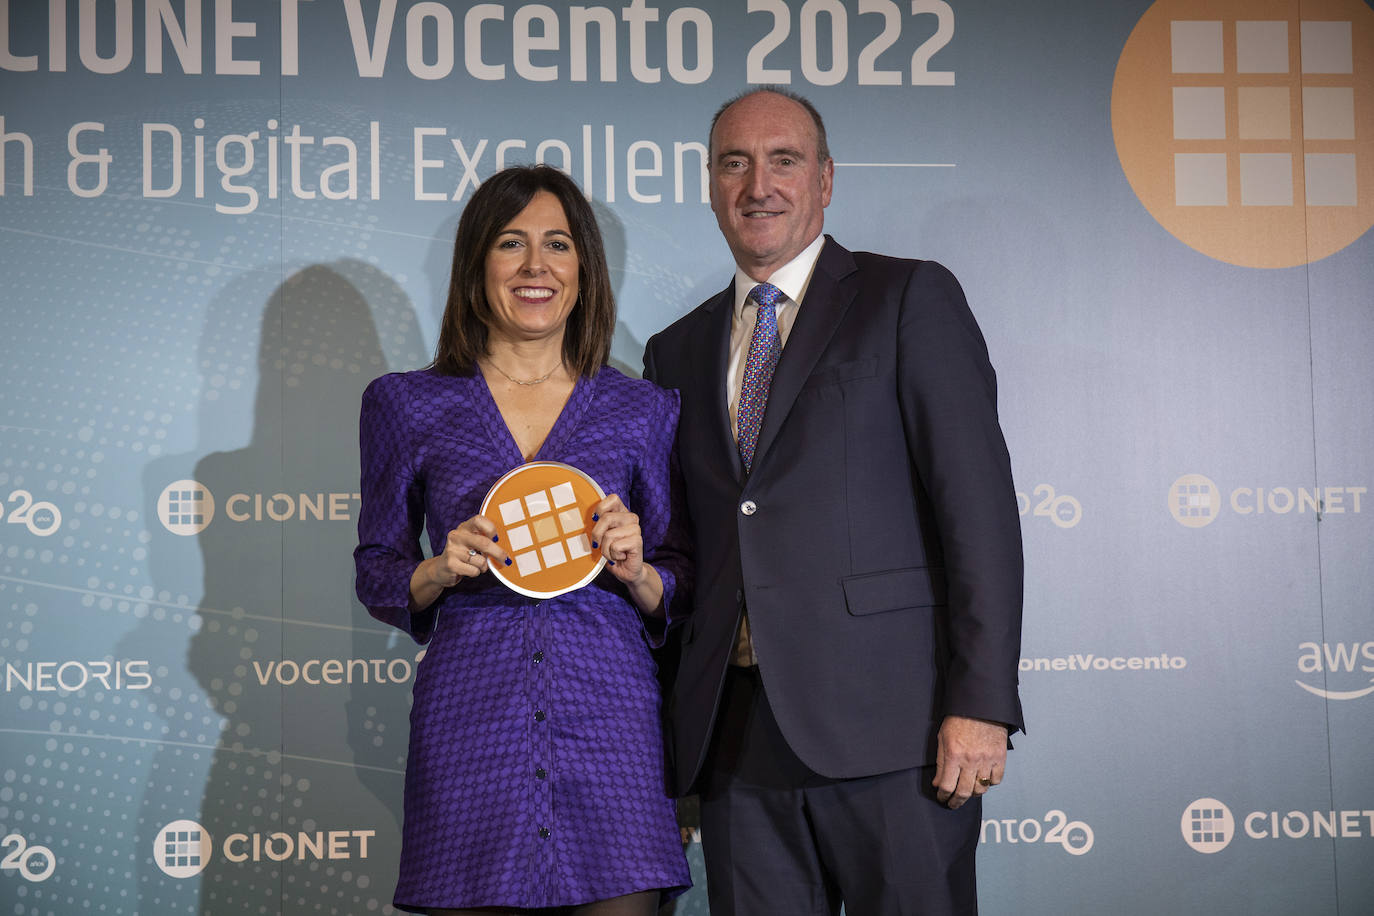 La Mejor Compañía en Transformación Digital fue FERROVIAL. Lucía Flecha Lozano directora de Transformación Digital recogió el Premio de Luis Álvarez Satorre Presidente de NEORIS en EMEA.